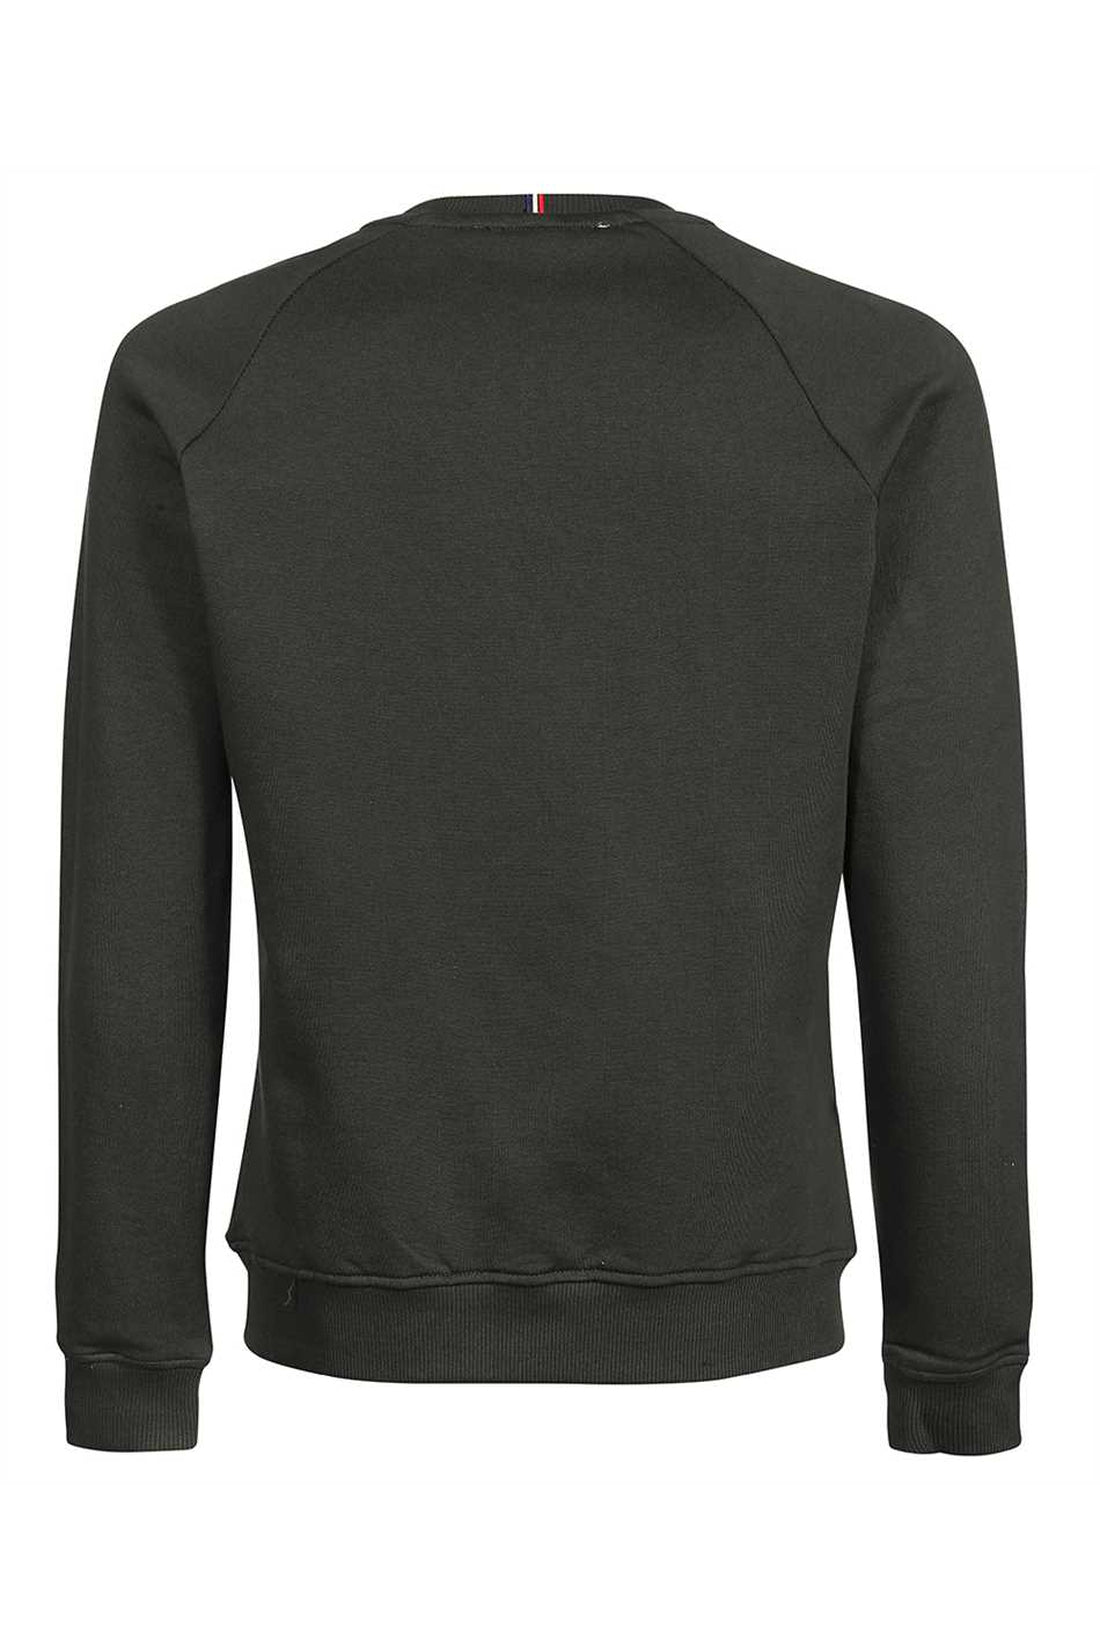 Les Deux-OUTLET-SALE-Nørregaard cotton crew-neck sweatshirt-ARCHIVIST